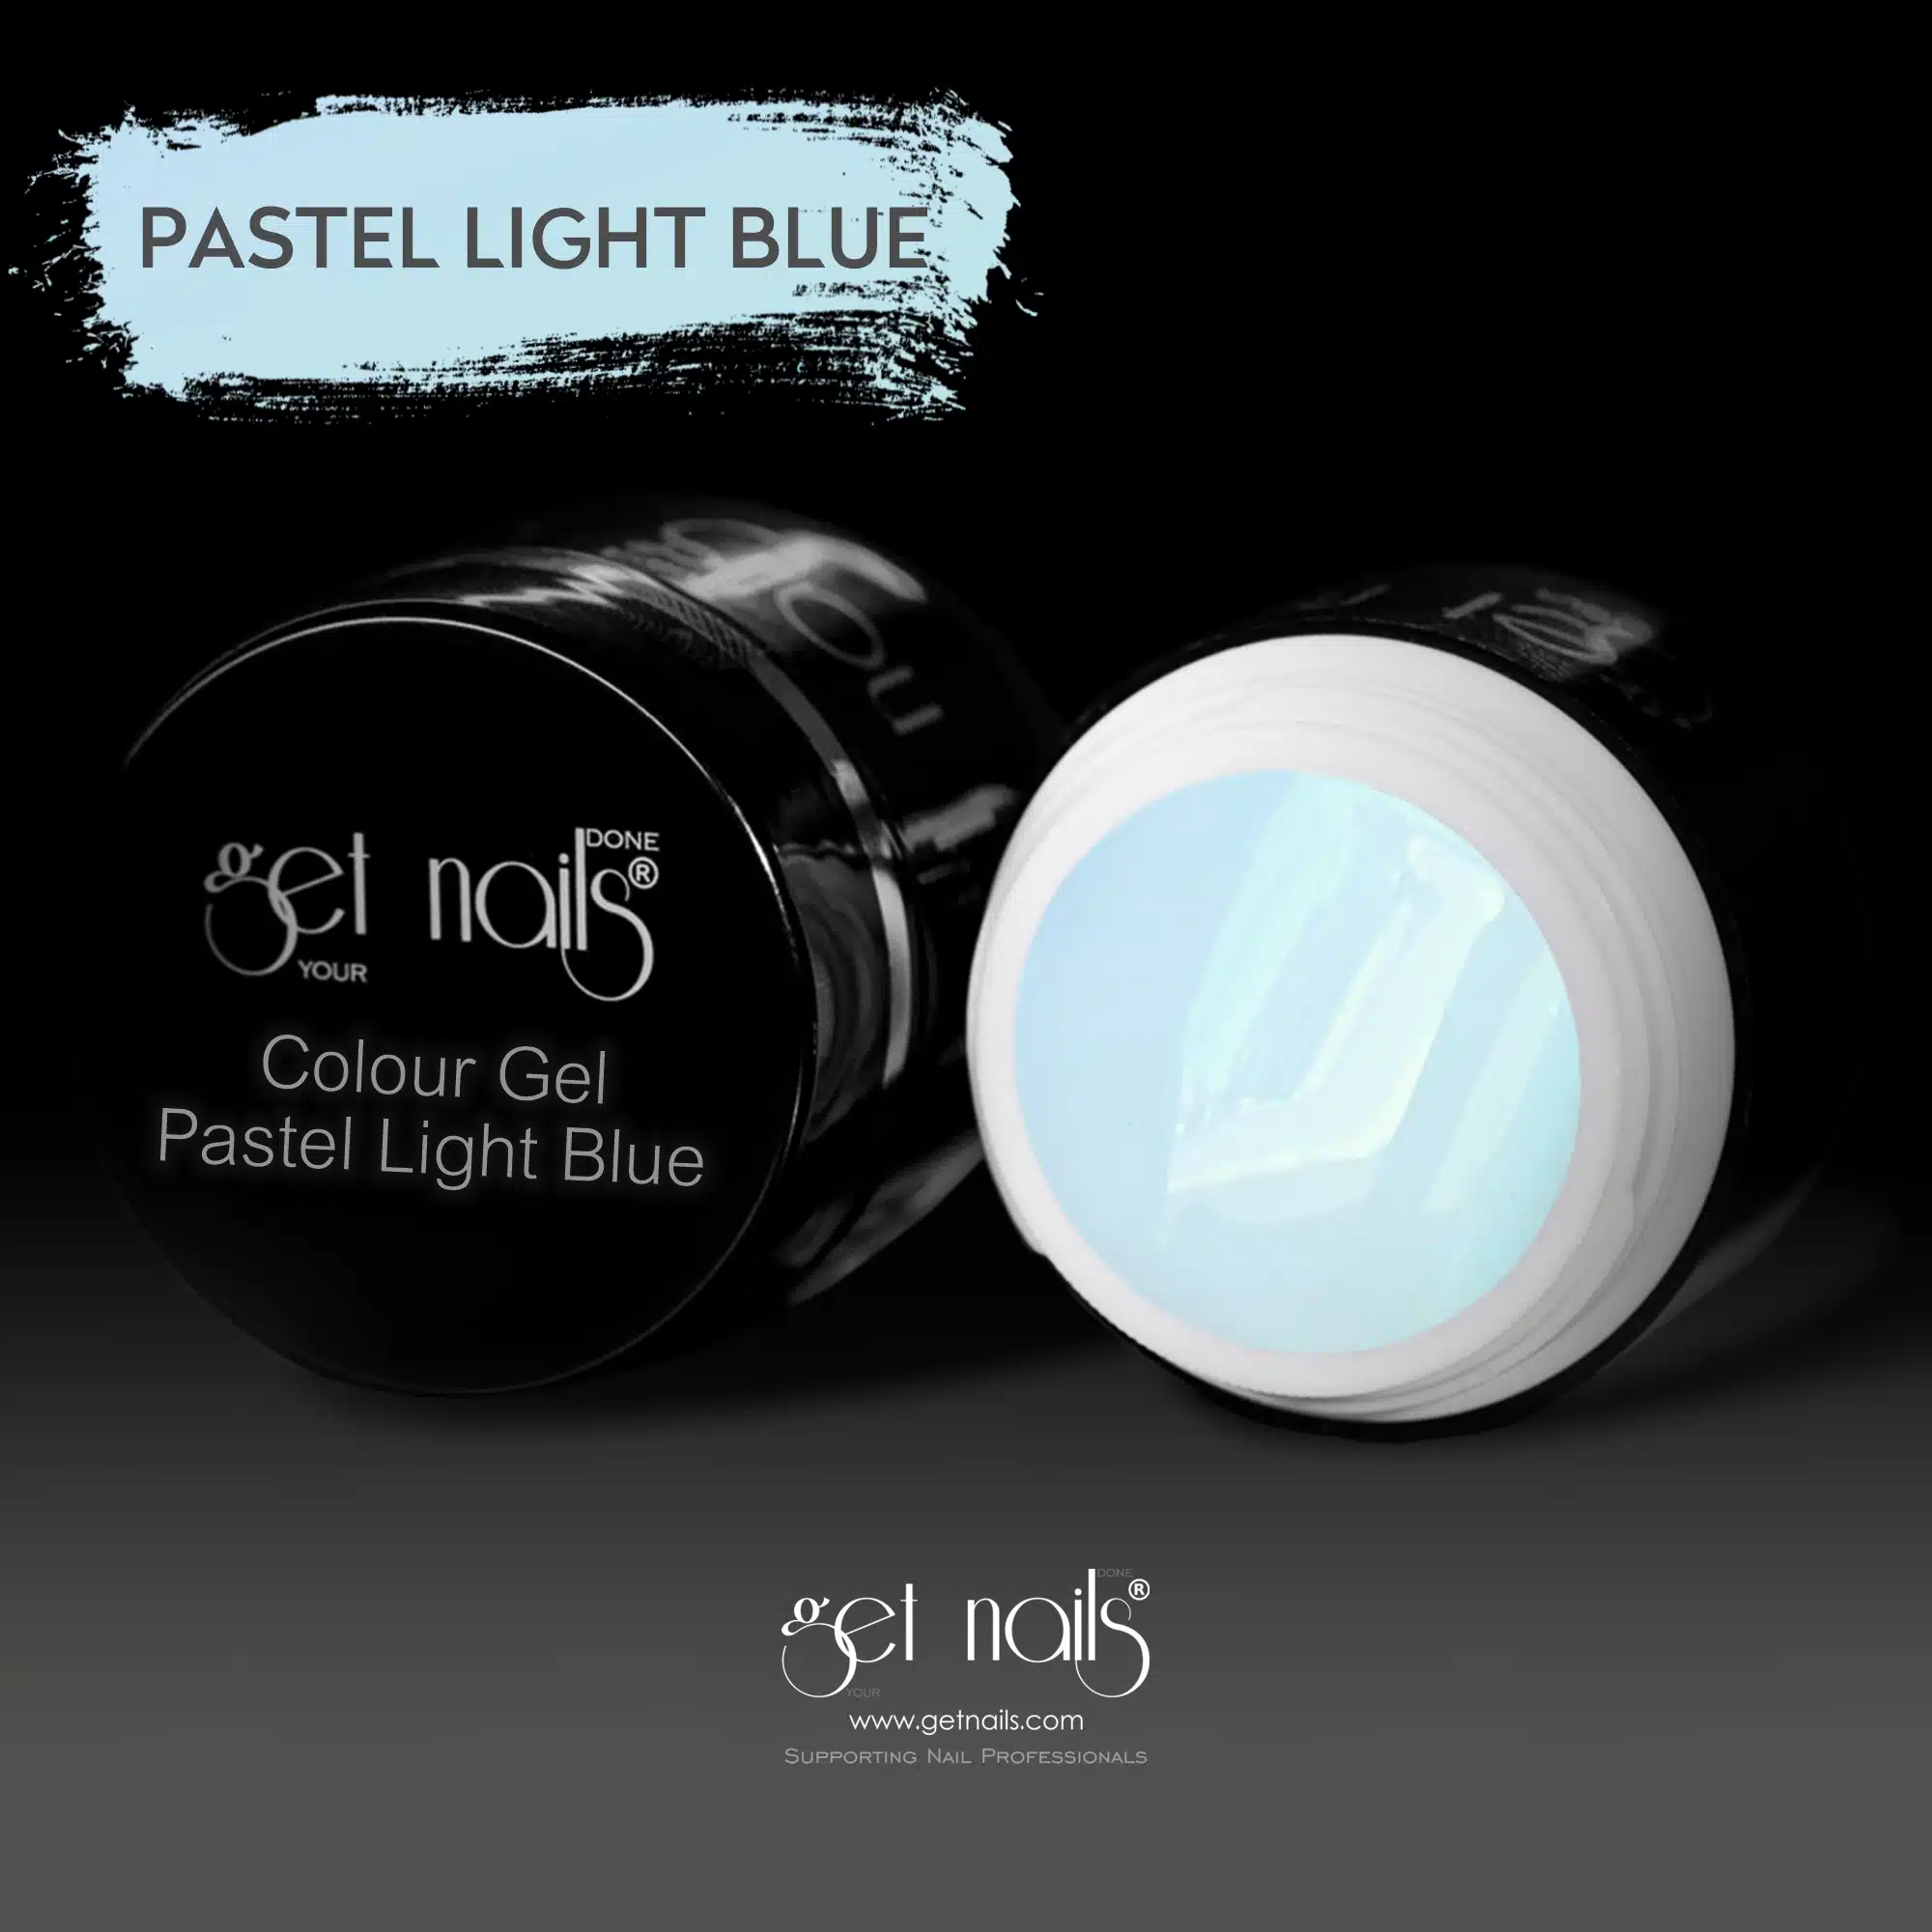 Get Nails Austria - Colour Gel Pastel Light Blue 5g